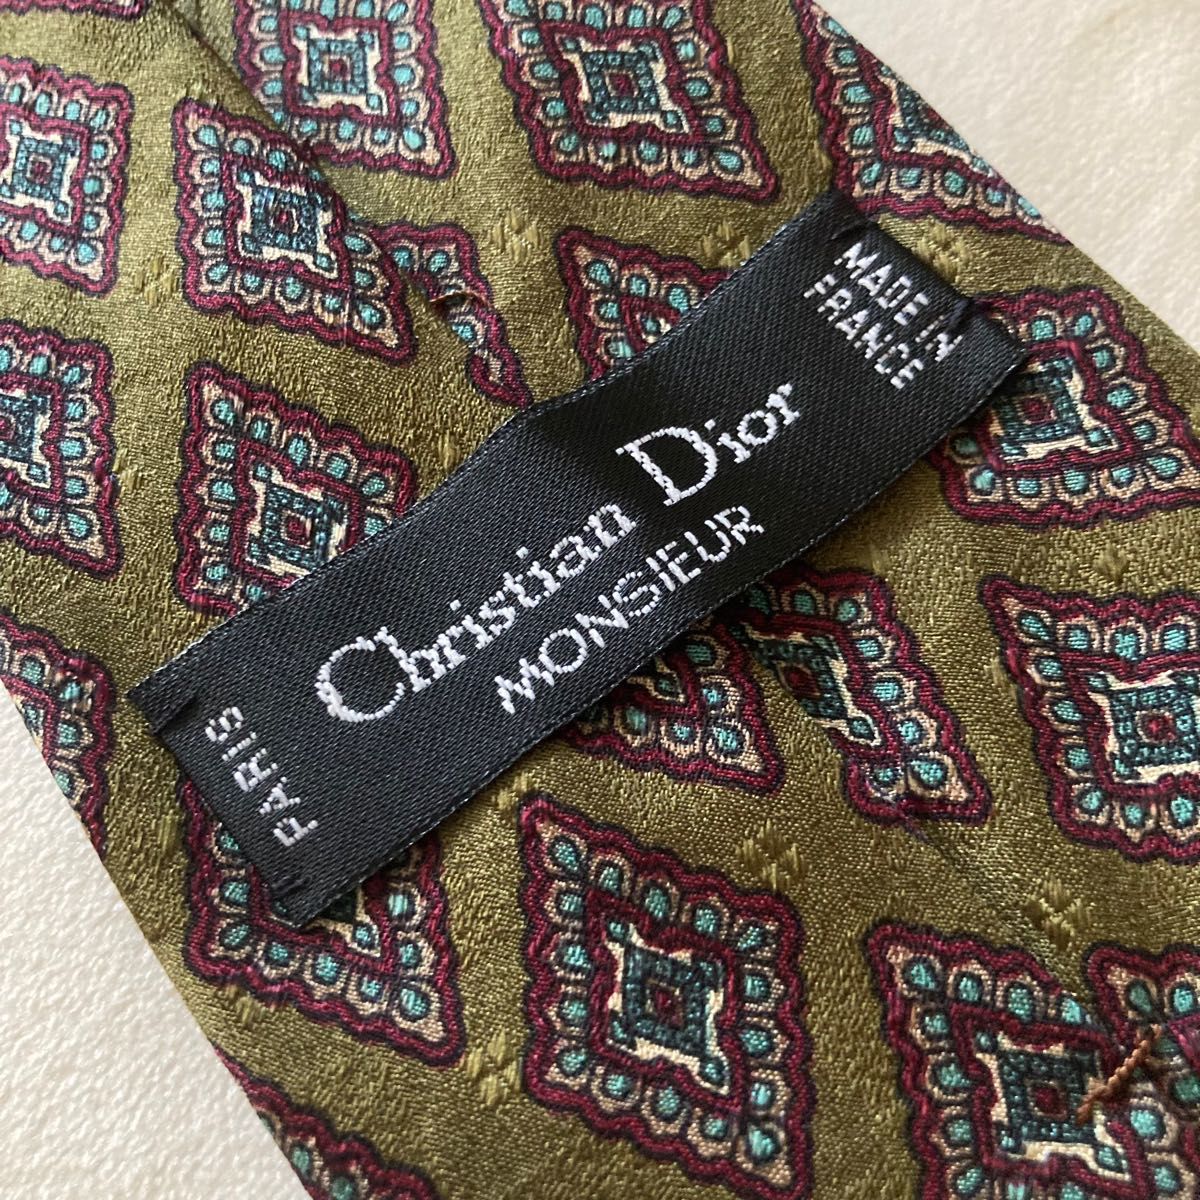 【Dior】ネクタイ 抹茶のような緑色のペイズリー柄 ワインレッド ブルー